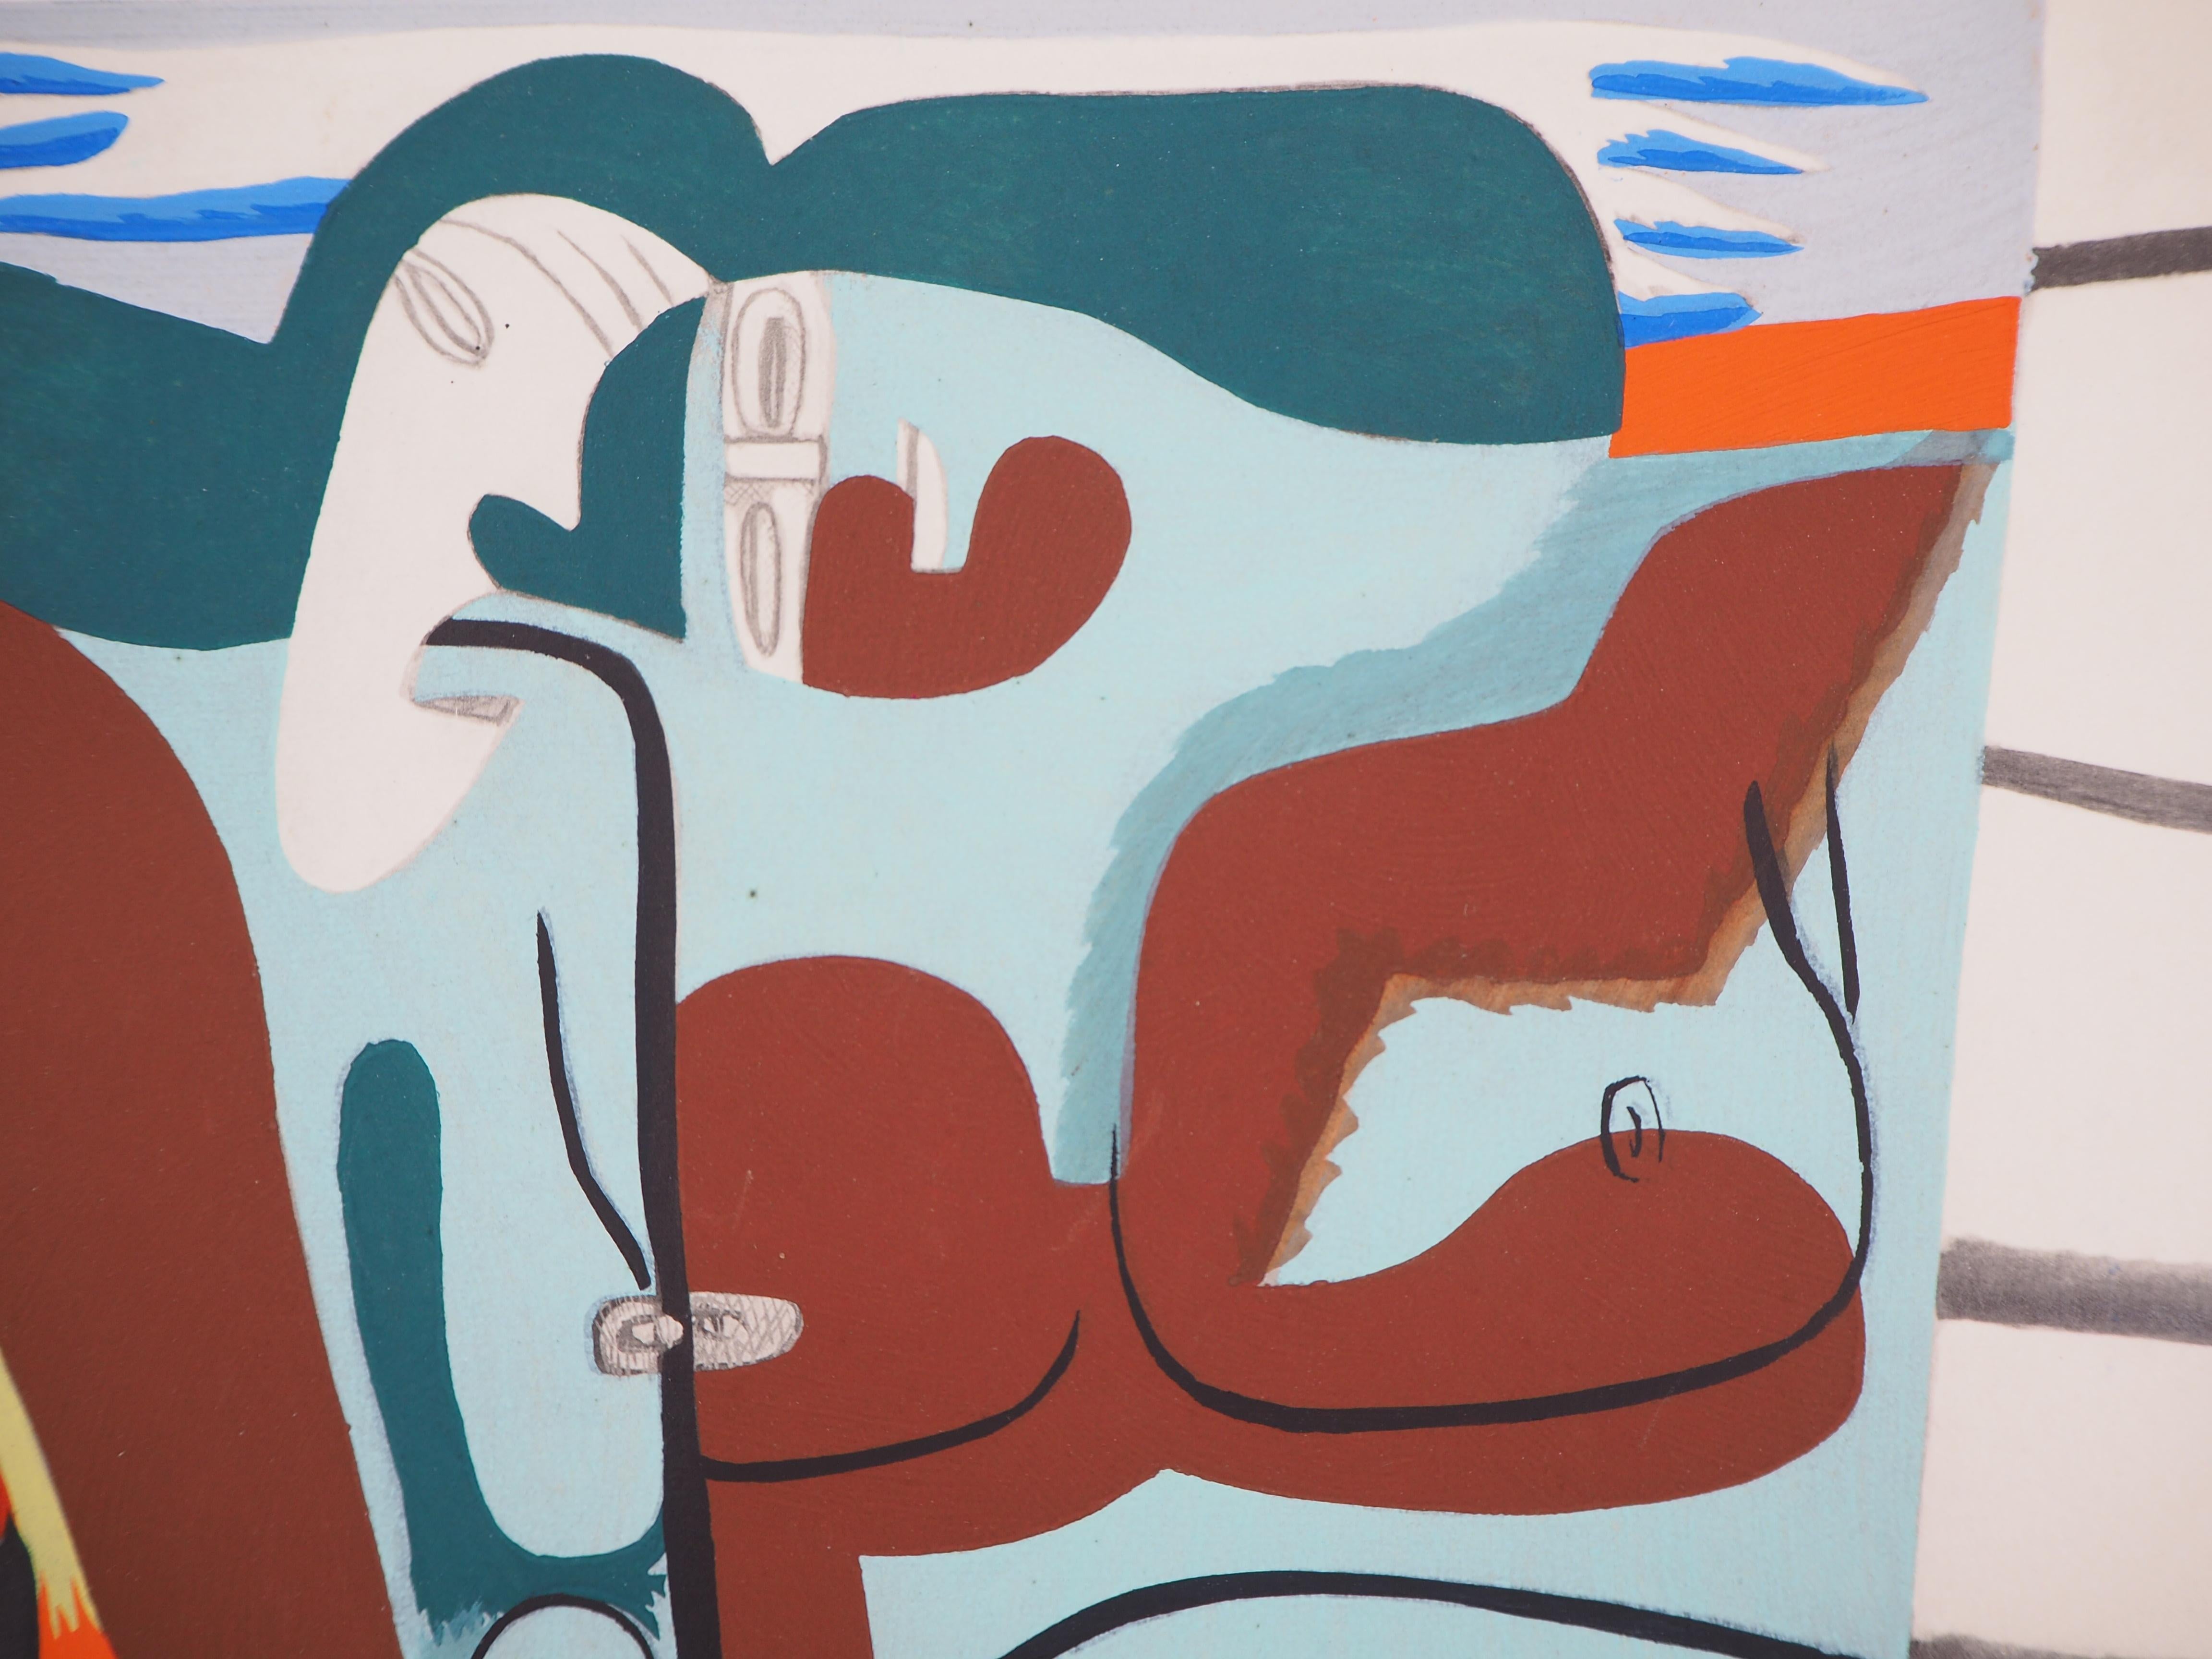 Le Corbusier (1887-1965)
Zwei Frauen mit Regenbogenschal, 1938

Lithographie und Aquarellschablone
Auf hellem Pergament 21 x 27 cm (ca. 8 x 11 inch)

Sehr guter Zustand, leicht stockfleckig im Rand